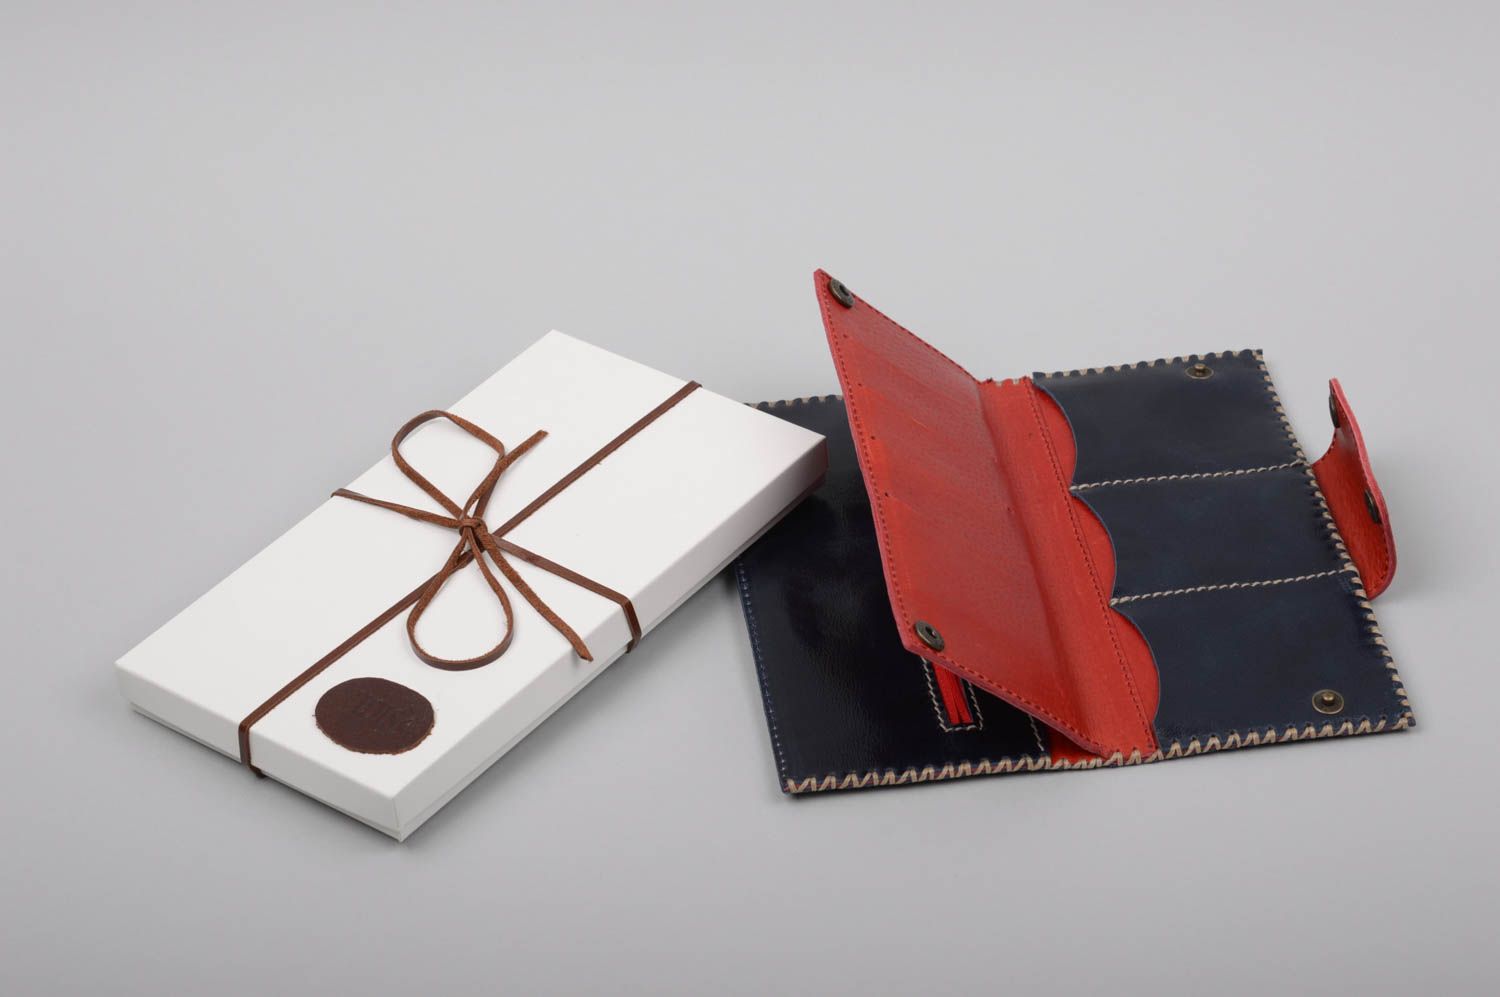 Бумажник из натуральной кожи черный с красным красивый стильный ручной работы фото 1